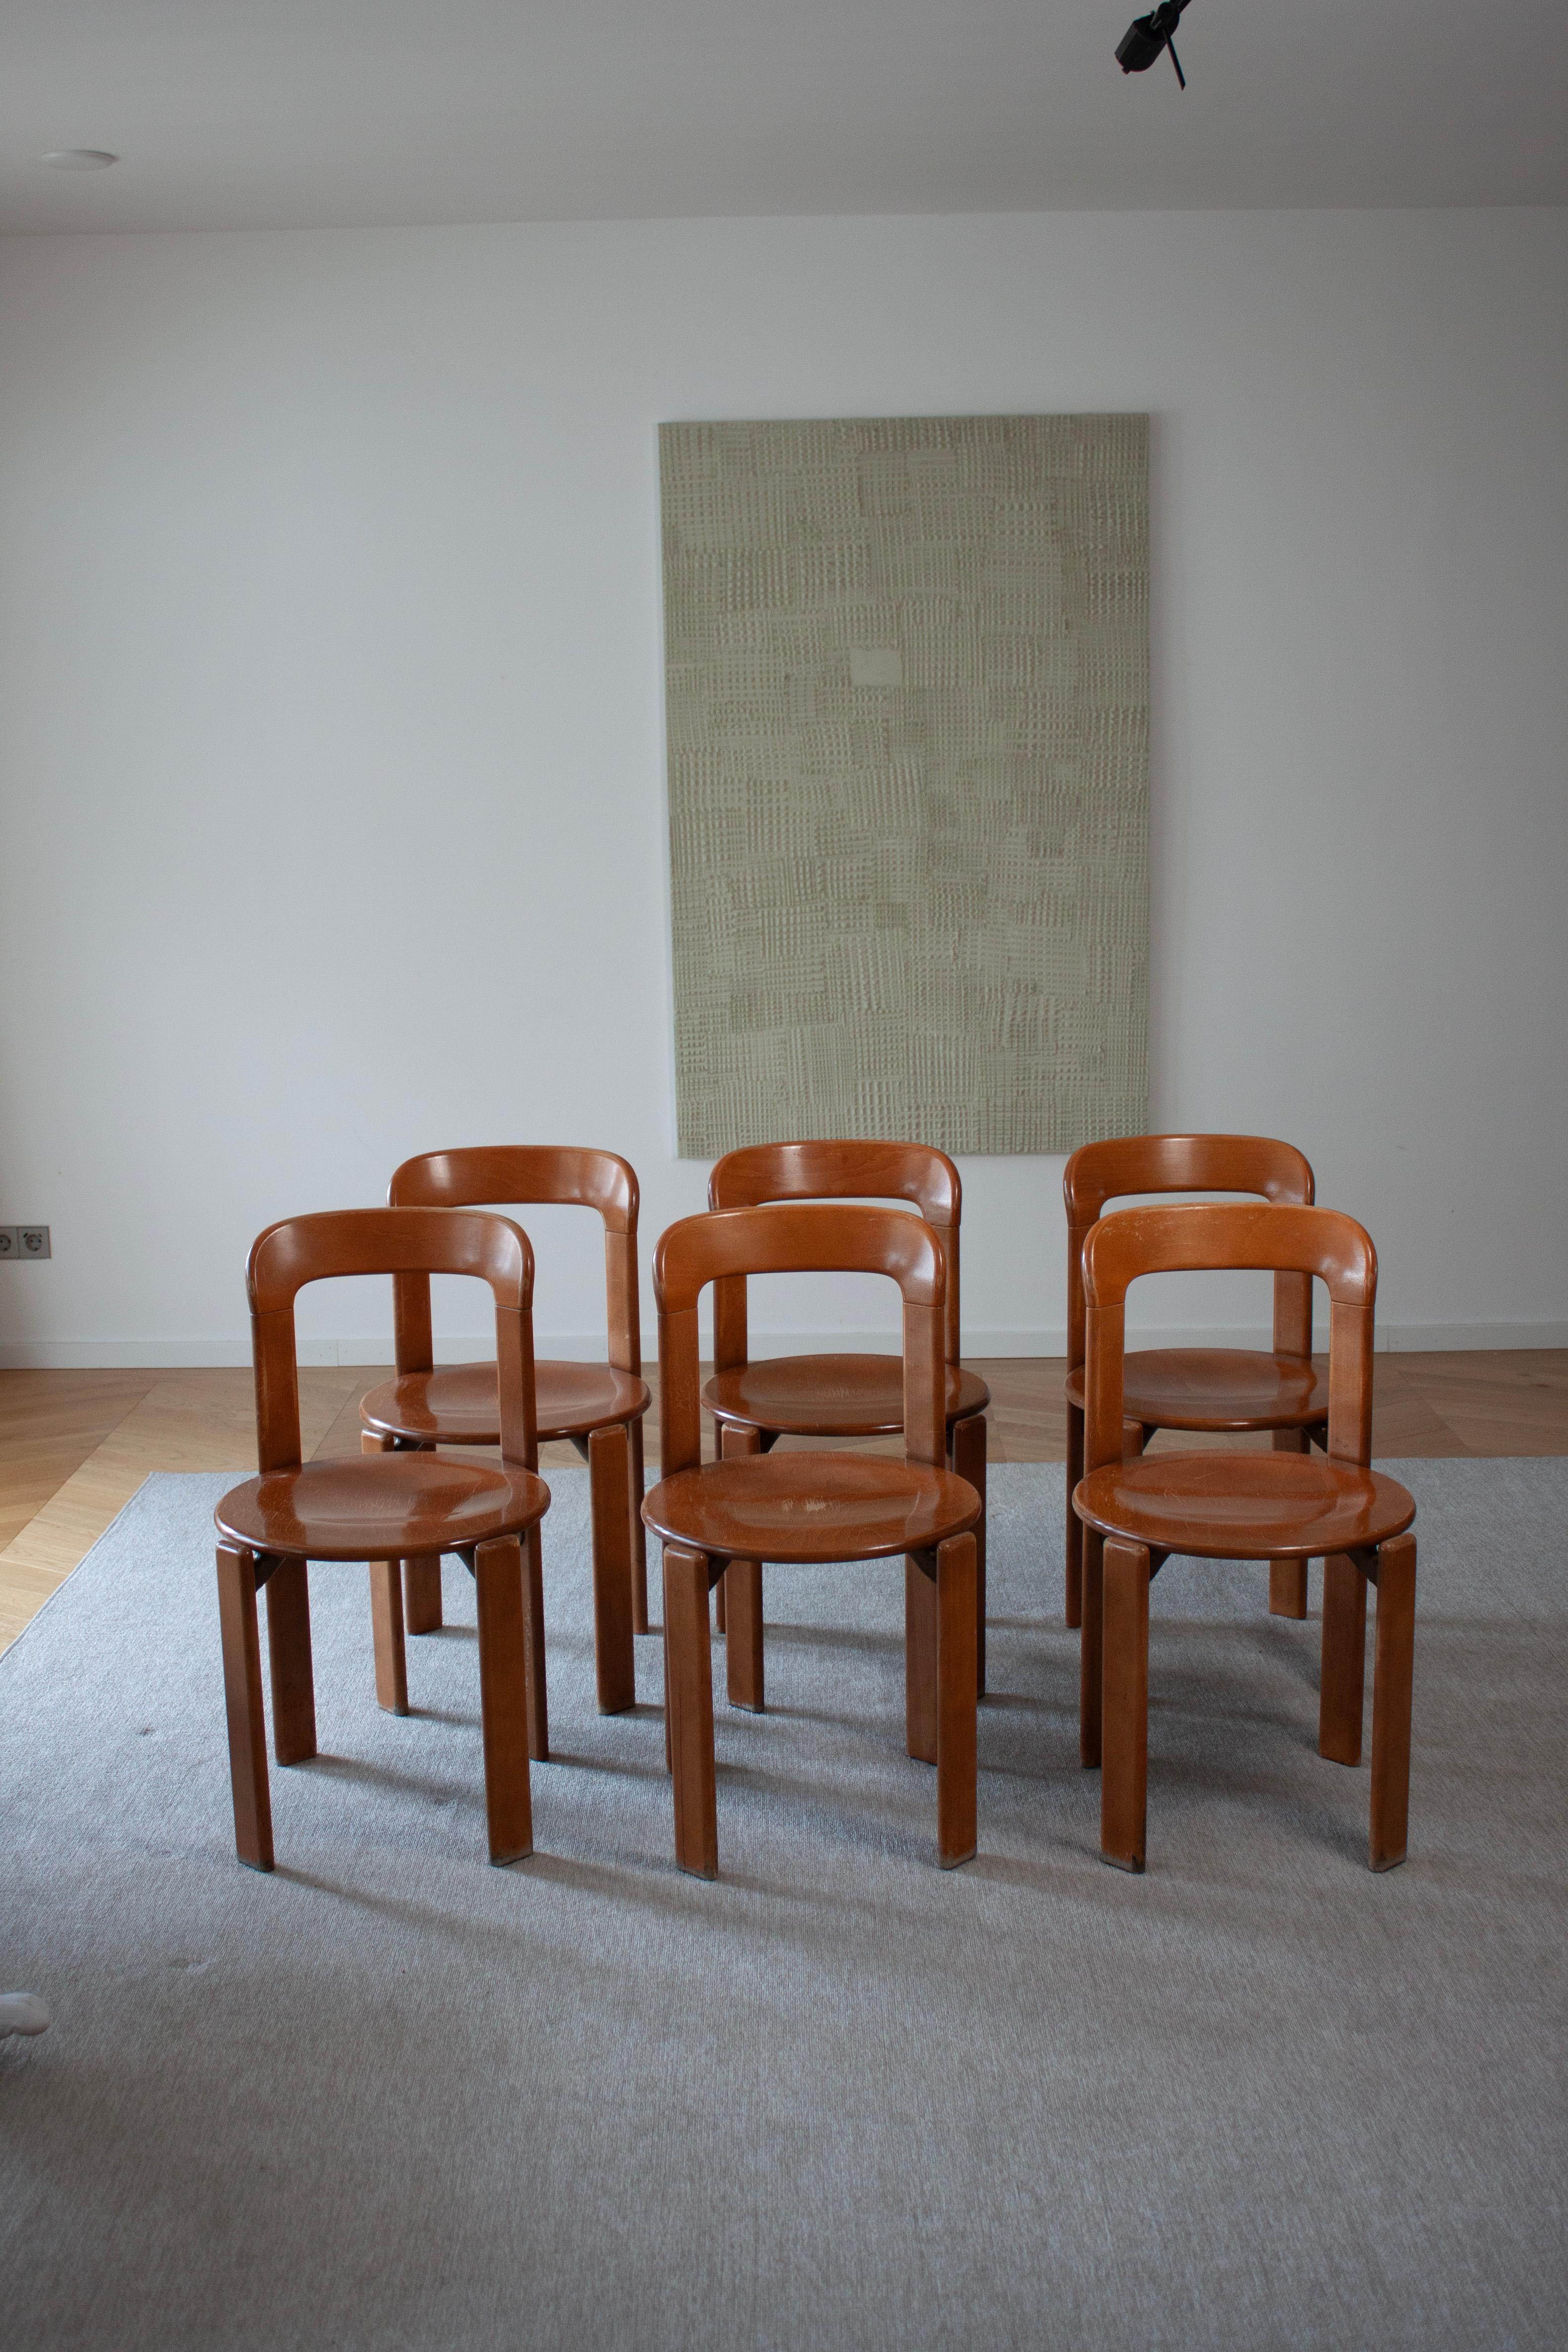 Verfügbar sind 6 original Bruno Rey Stühle. Hergestellt von Dietiker in Stein am Rhein, Schweiz. 

Diese Schweizer Designklassiker sind seit 1971 ein fester Bestandteil der Schweizer Inneneinrichtung.
Seine minimale, runde und zeitlose Form ist nie